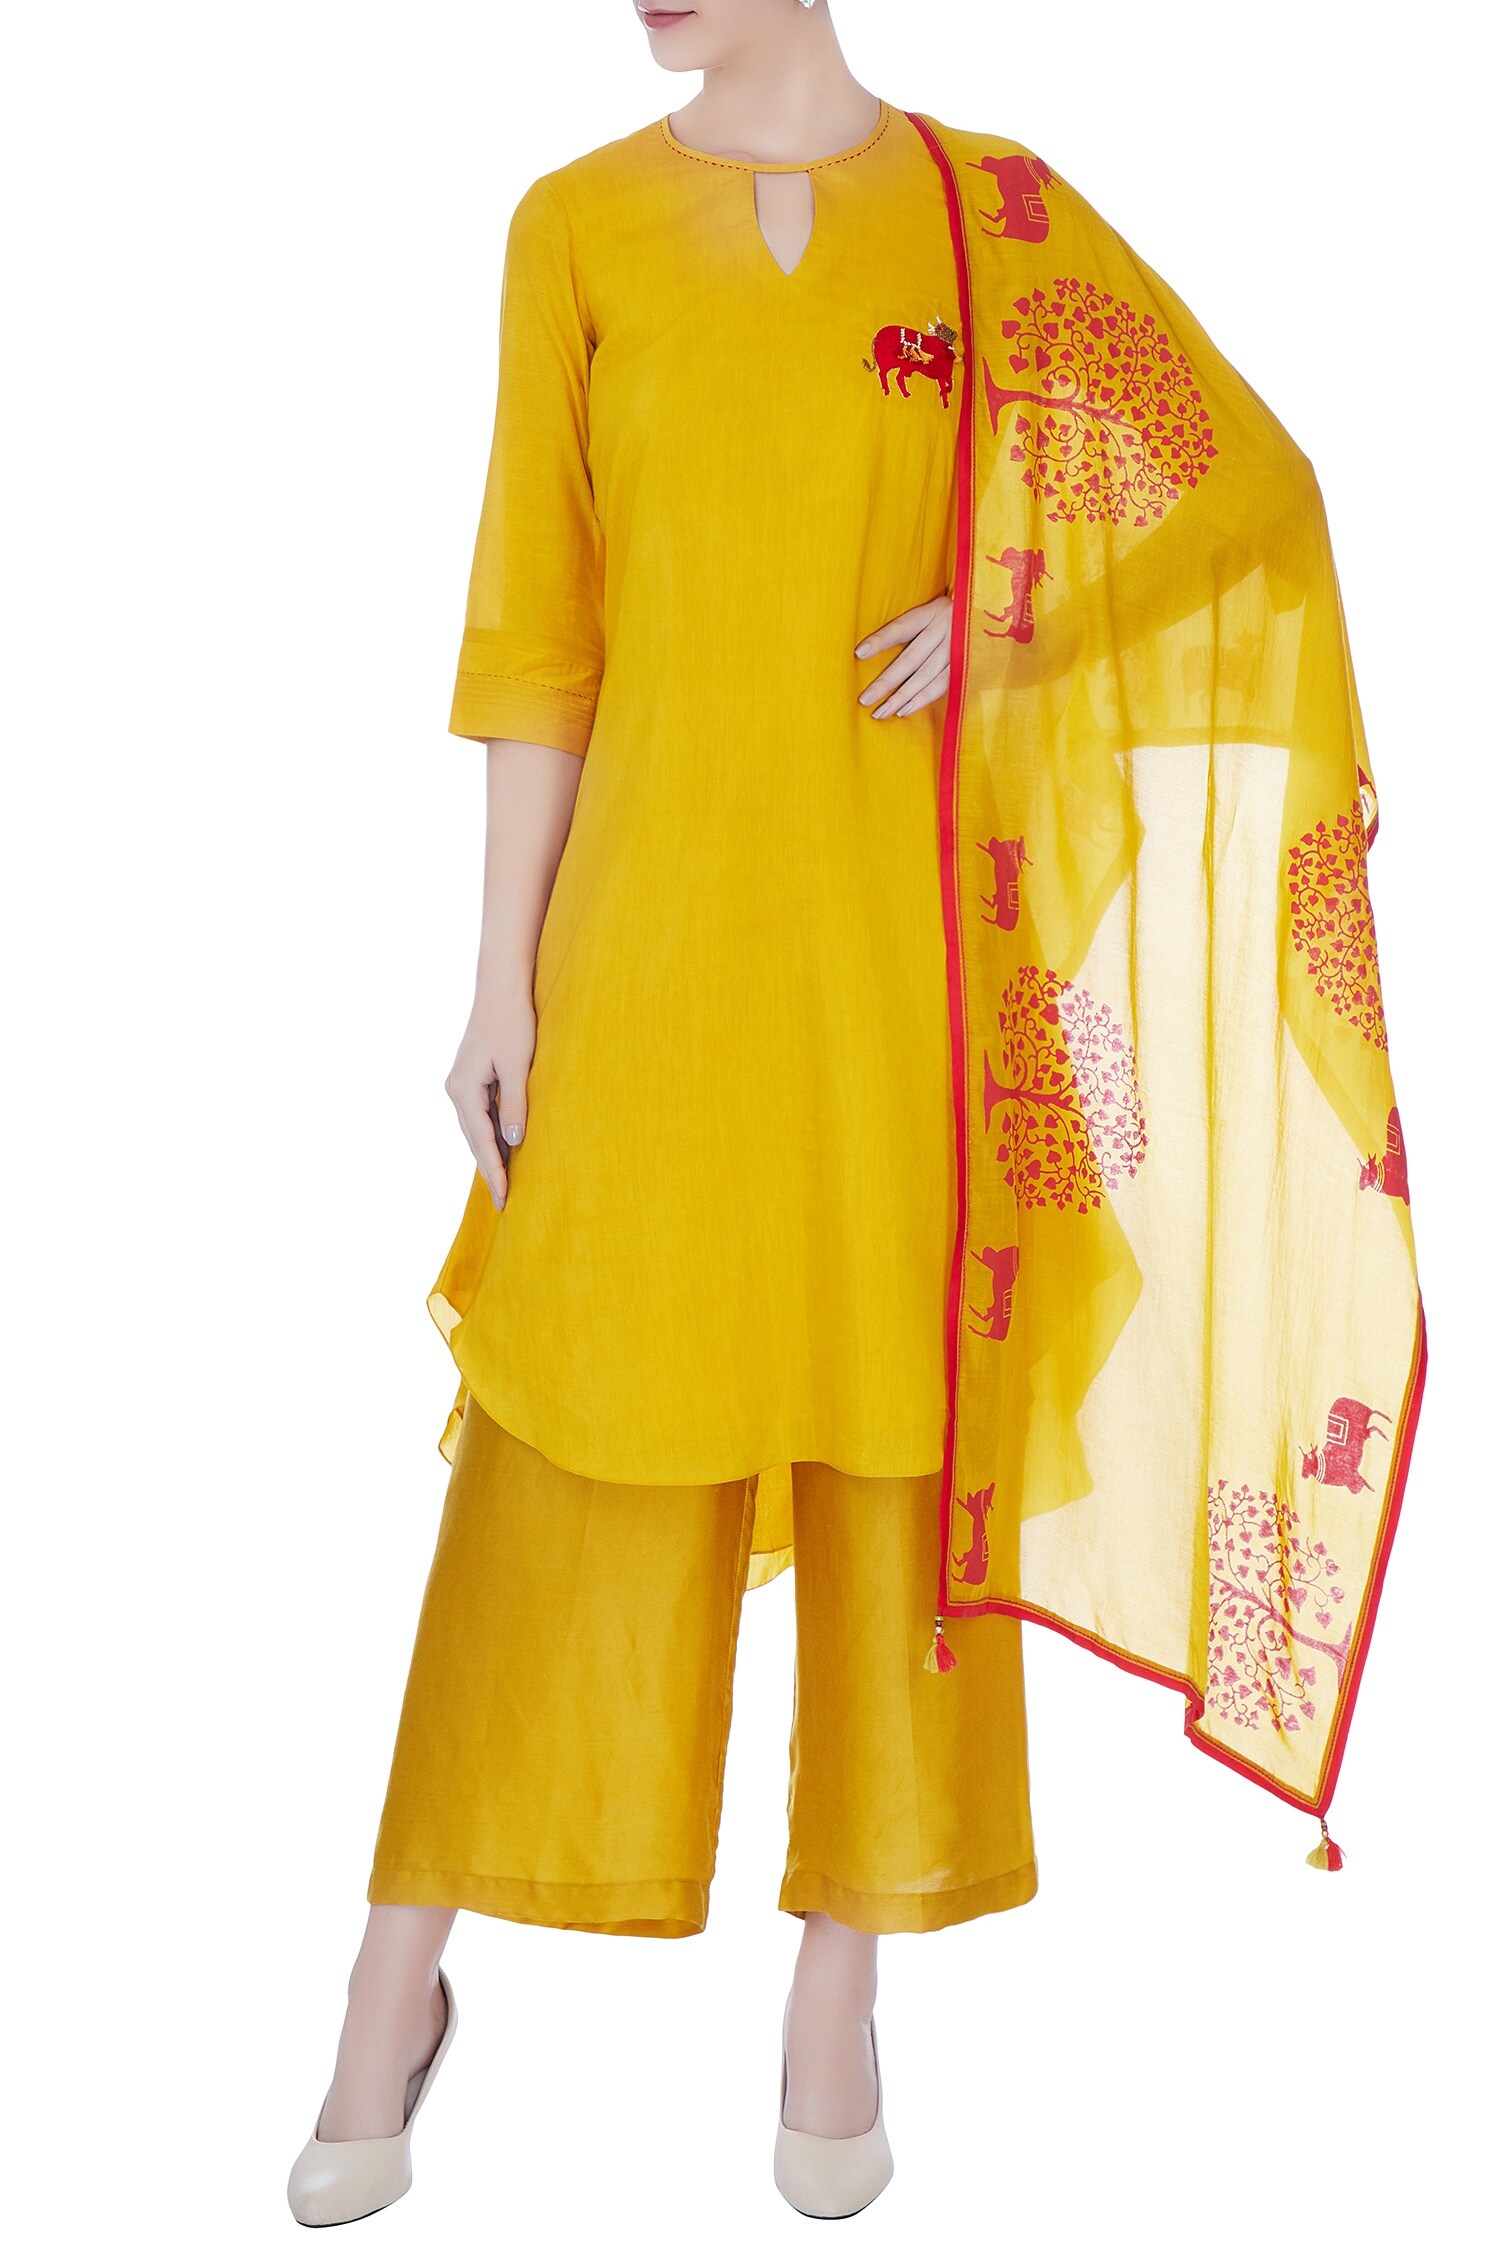 Desert Shine by Sulochana Jangir Yellow Round Embroidered Kurta Set For Women